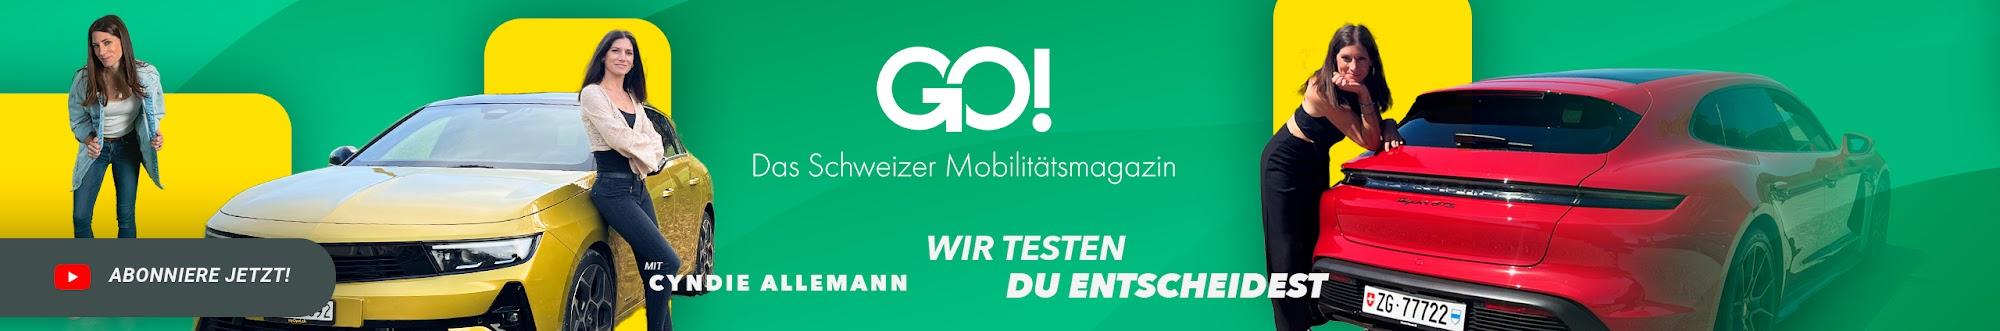 GO! Das Schweizer Mobilitätsmagazin